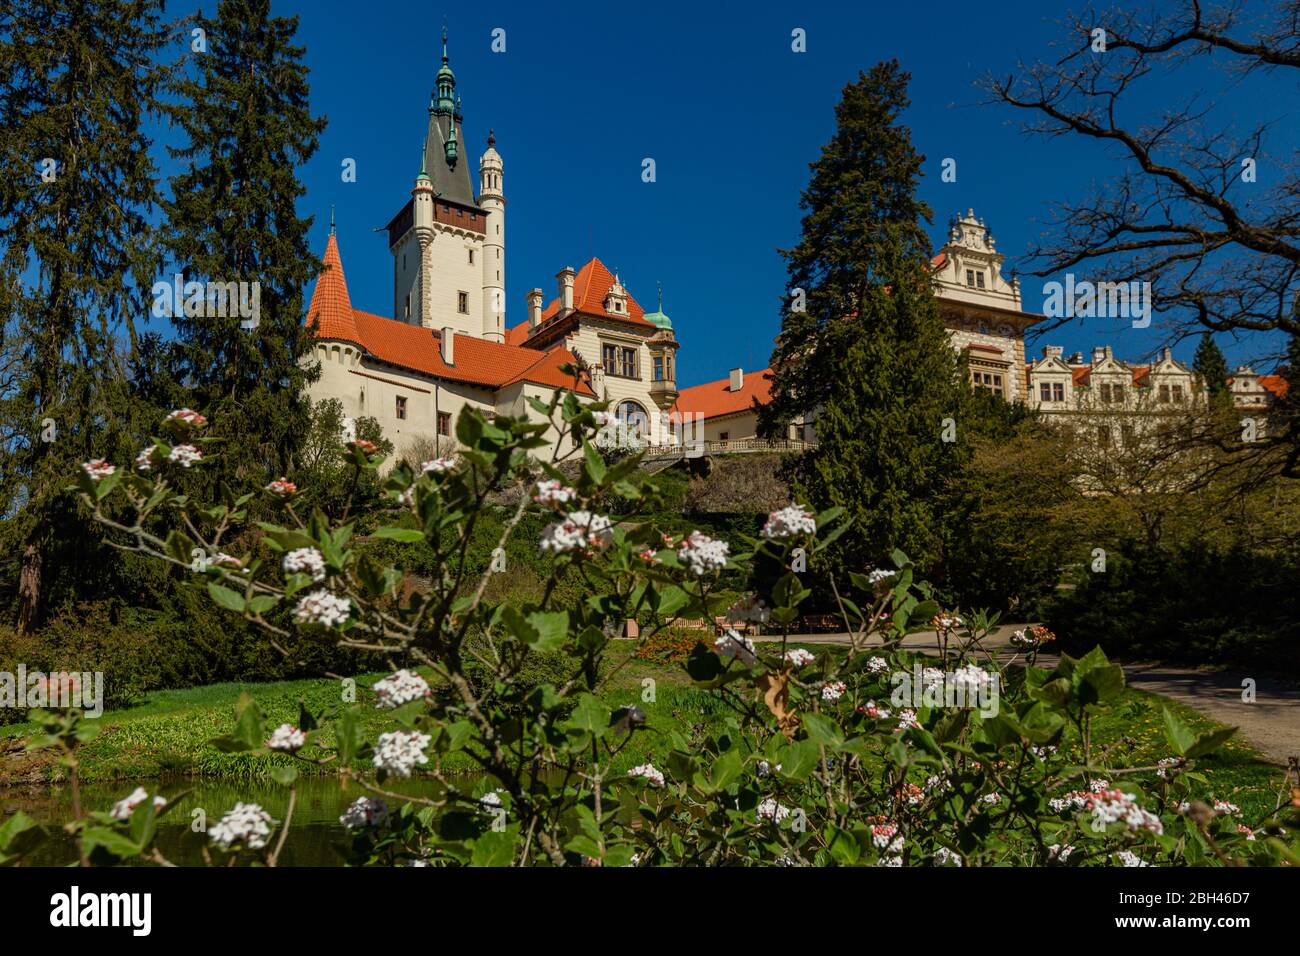 Pruhonice / Tschechische Republik - April 20 2020: Blick auf eine Burg, die am sonnigen Frühlingstag auf einem Hügel steht und einen strahlend blauen Himmel hat. Bush und weiße Blume Stockfoto